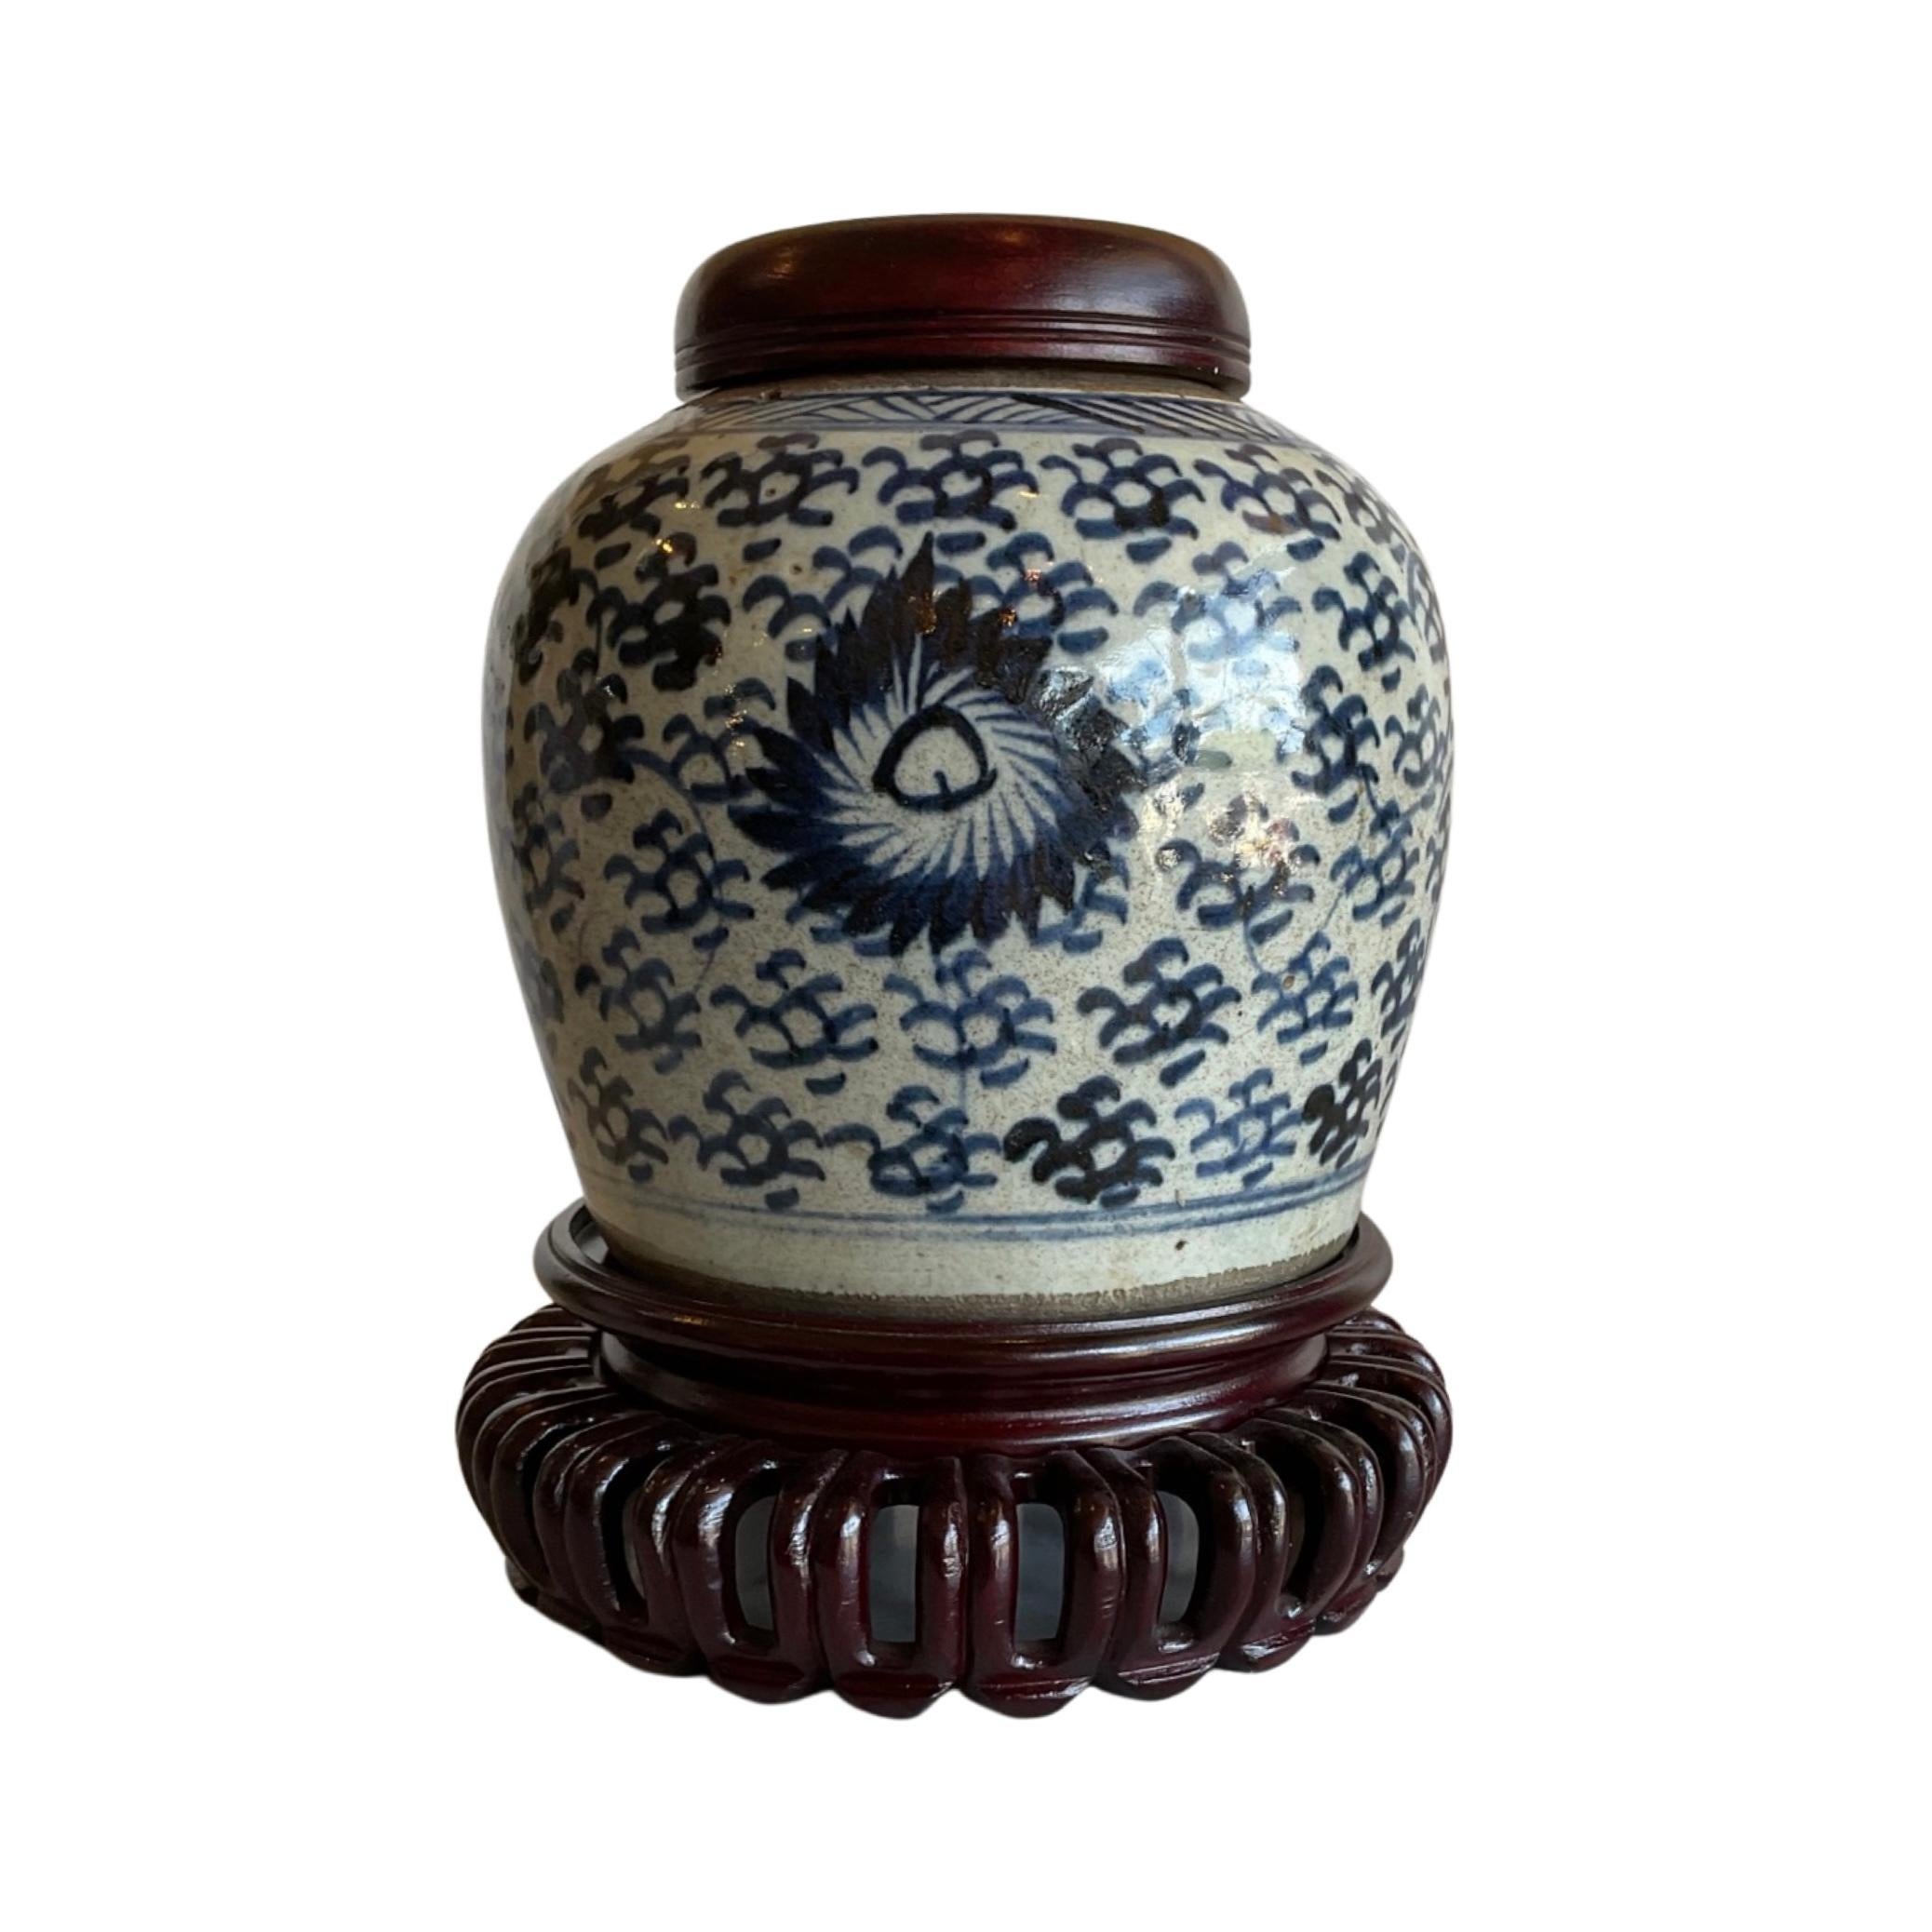 Cette exquise jarre de stockage en porcelaine chinoise du XVIIIe siècle est magnifiquement fabriquée et est accompagnée d'un bouchon et d'un support en bois. Parfait pour ranger divers objets, il constitue un ajout élégant et pratique à toute maison.